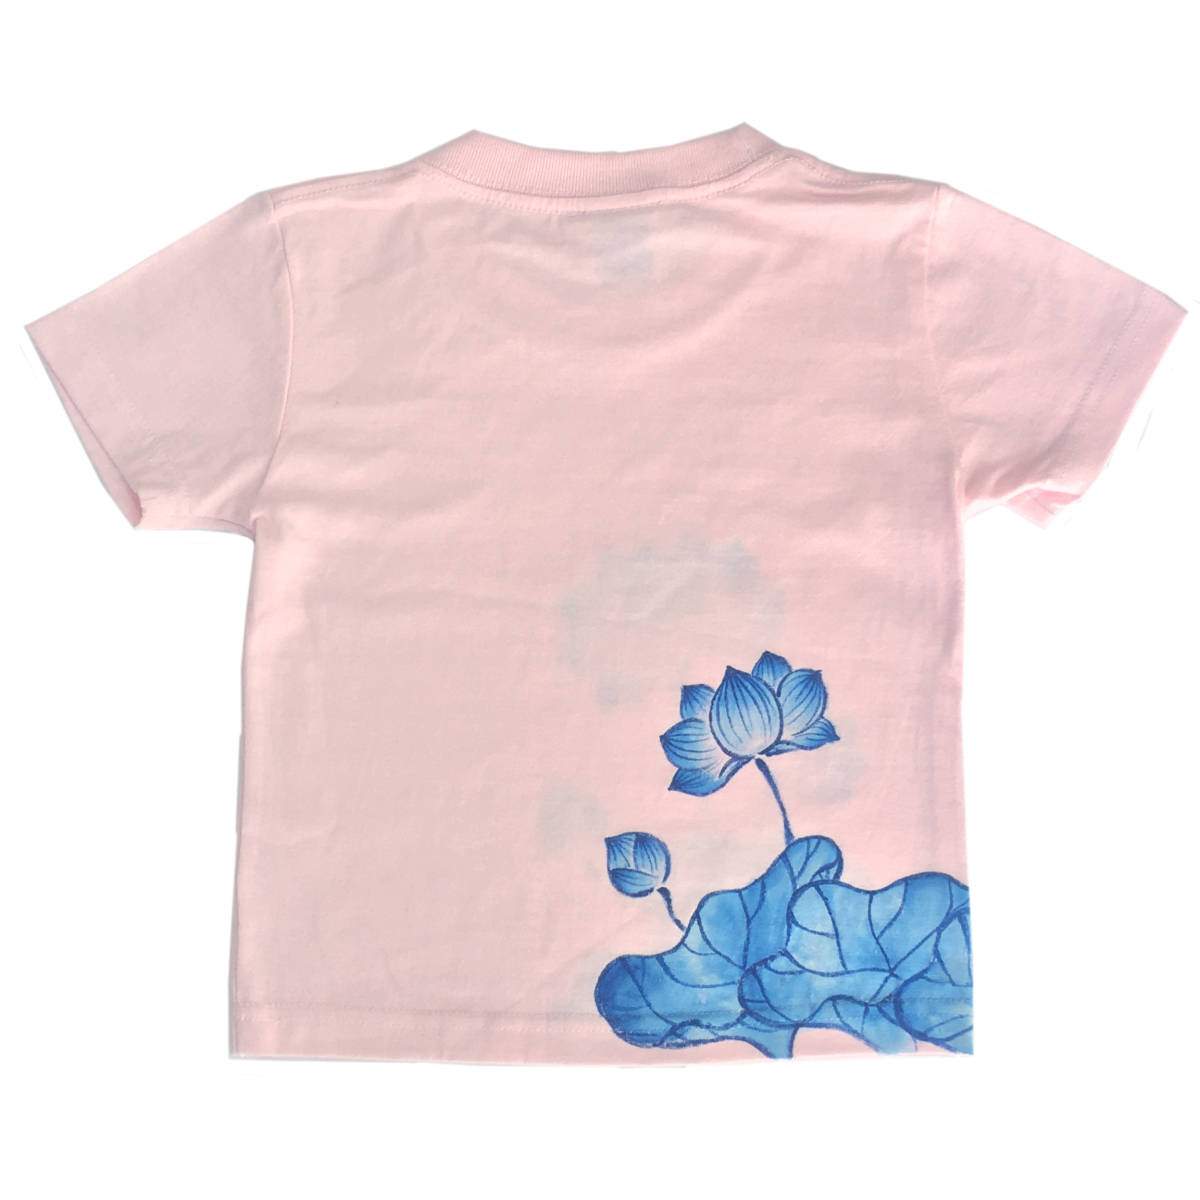 キッズ Tシャツ 110サイズ ピンク 蓮柄Tシャツ 手描きで描いた蓮の花柄Tシャツ 半袖 和柄 和風 レトロ ハンドメイド